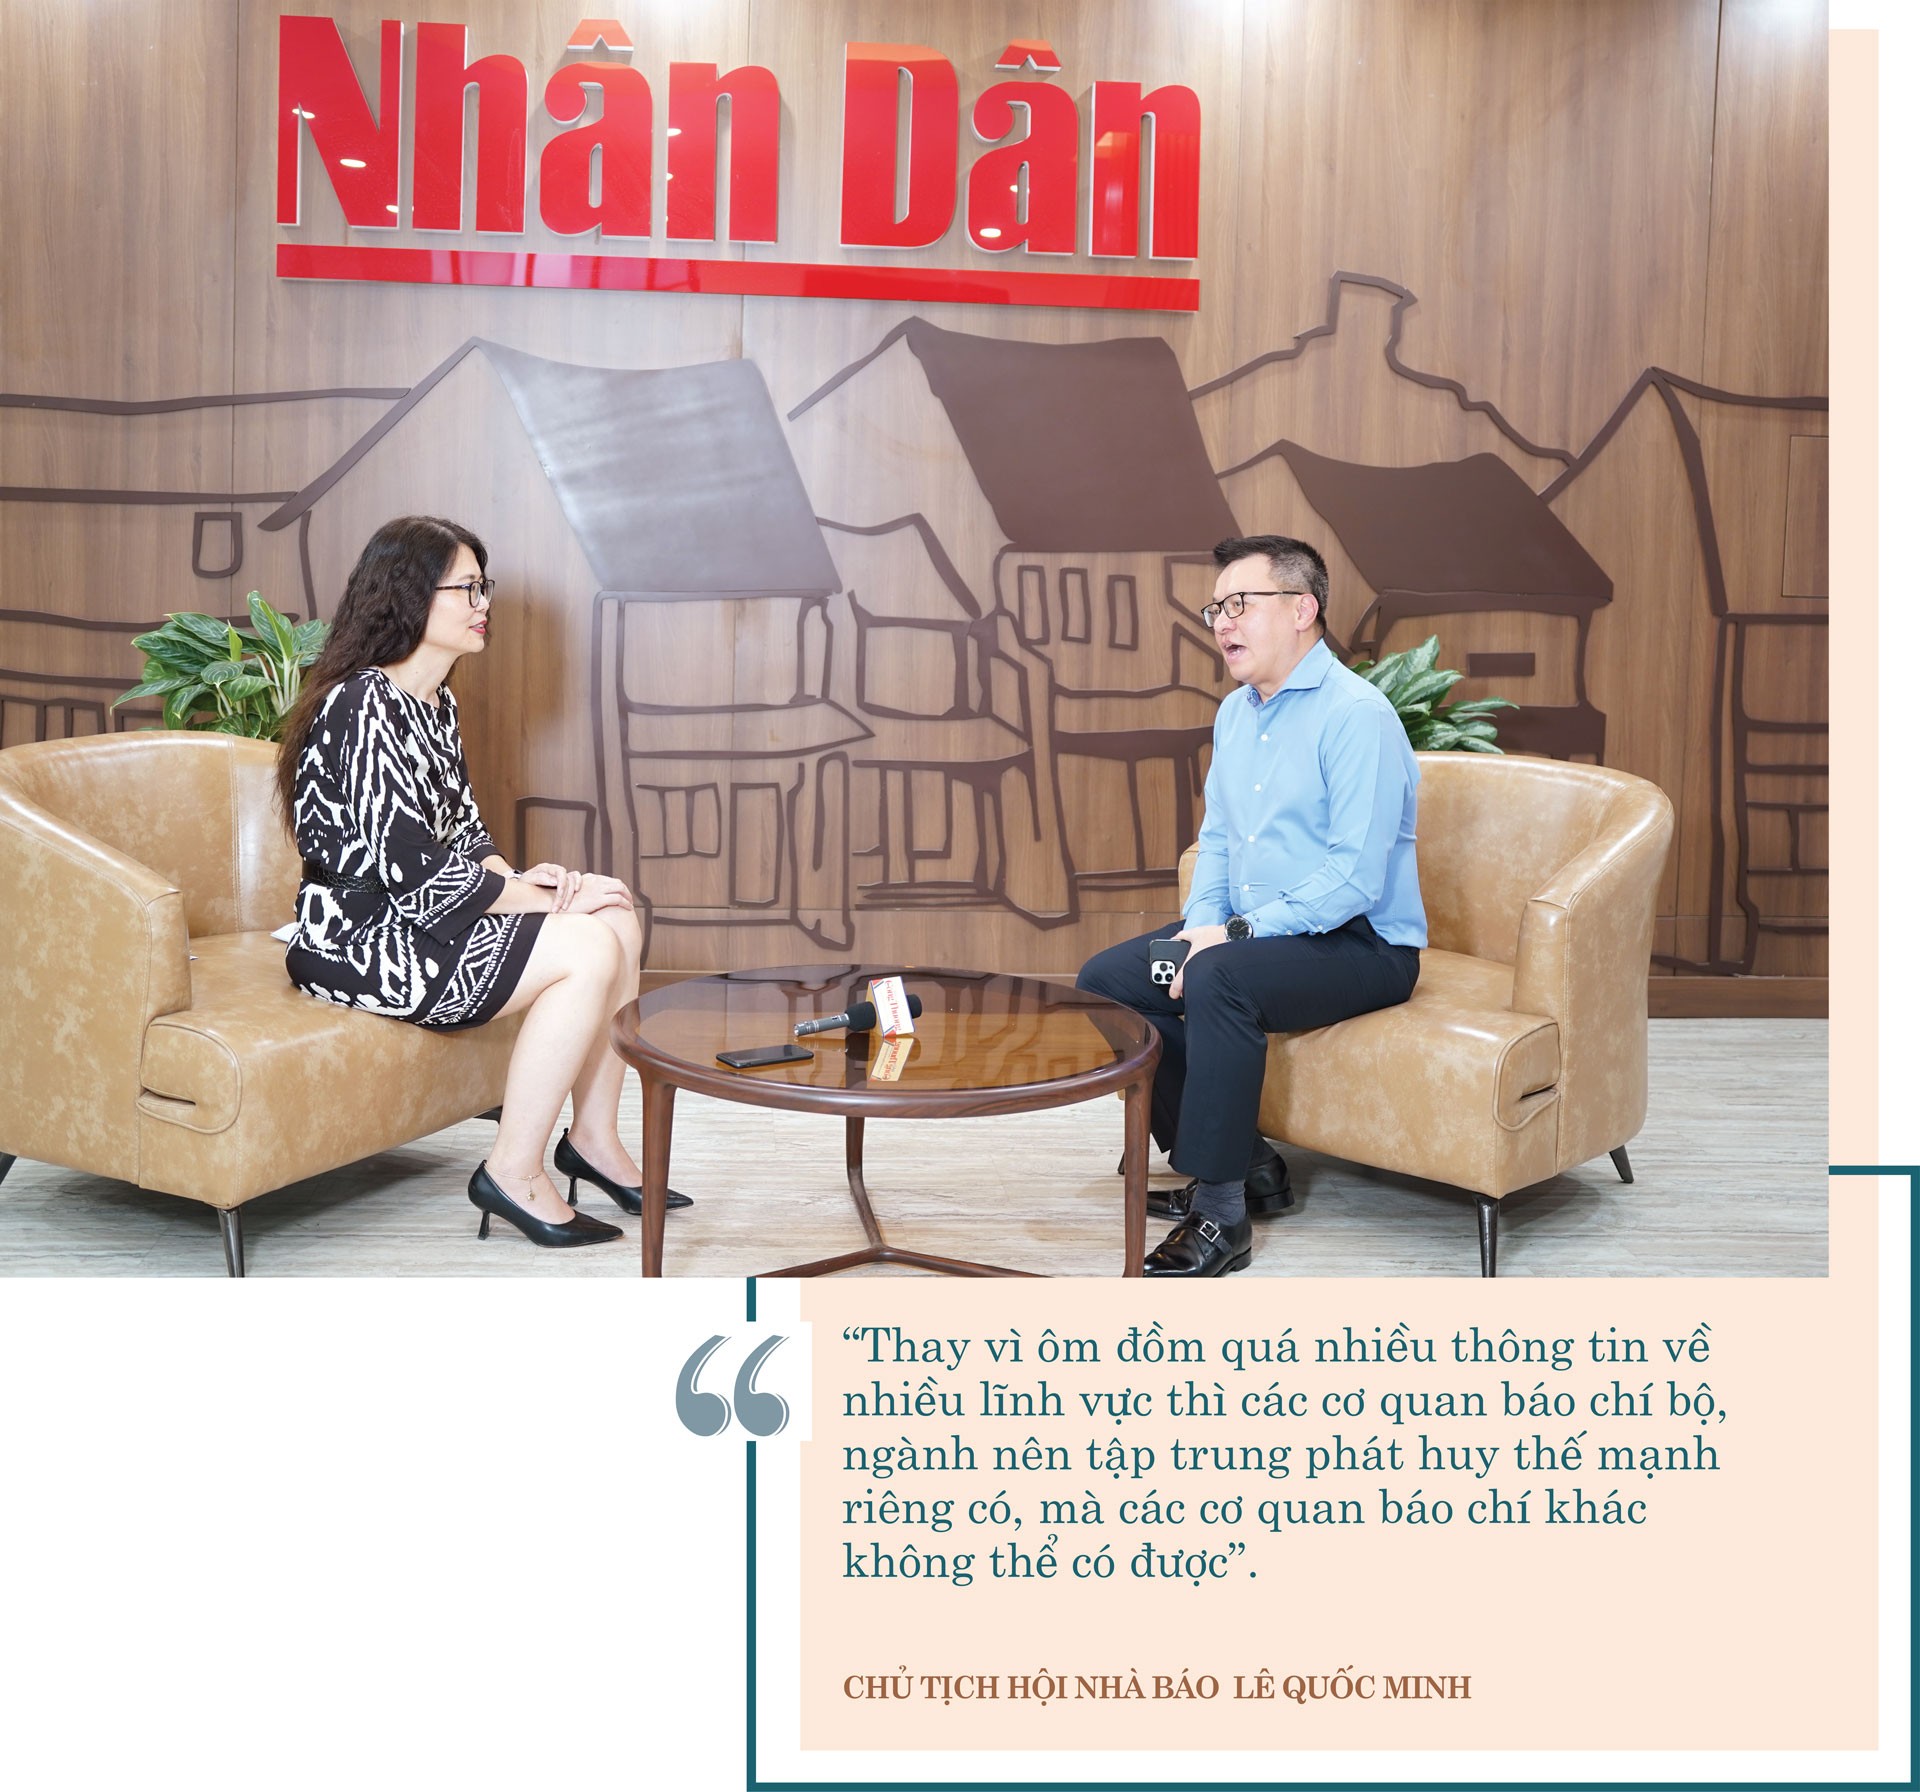 Lê Quốc Minh - Chủ tịch Hội nhà báo Việt Nam